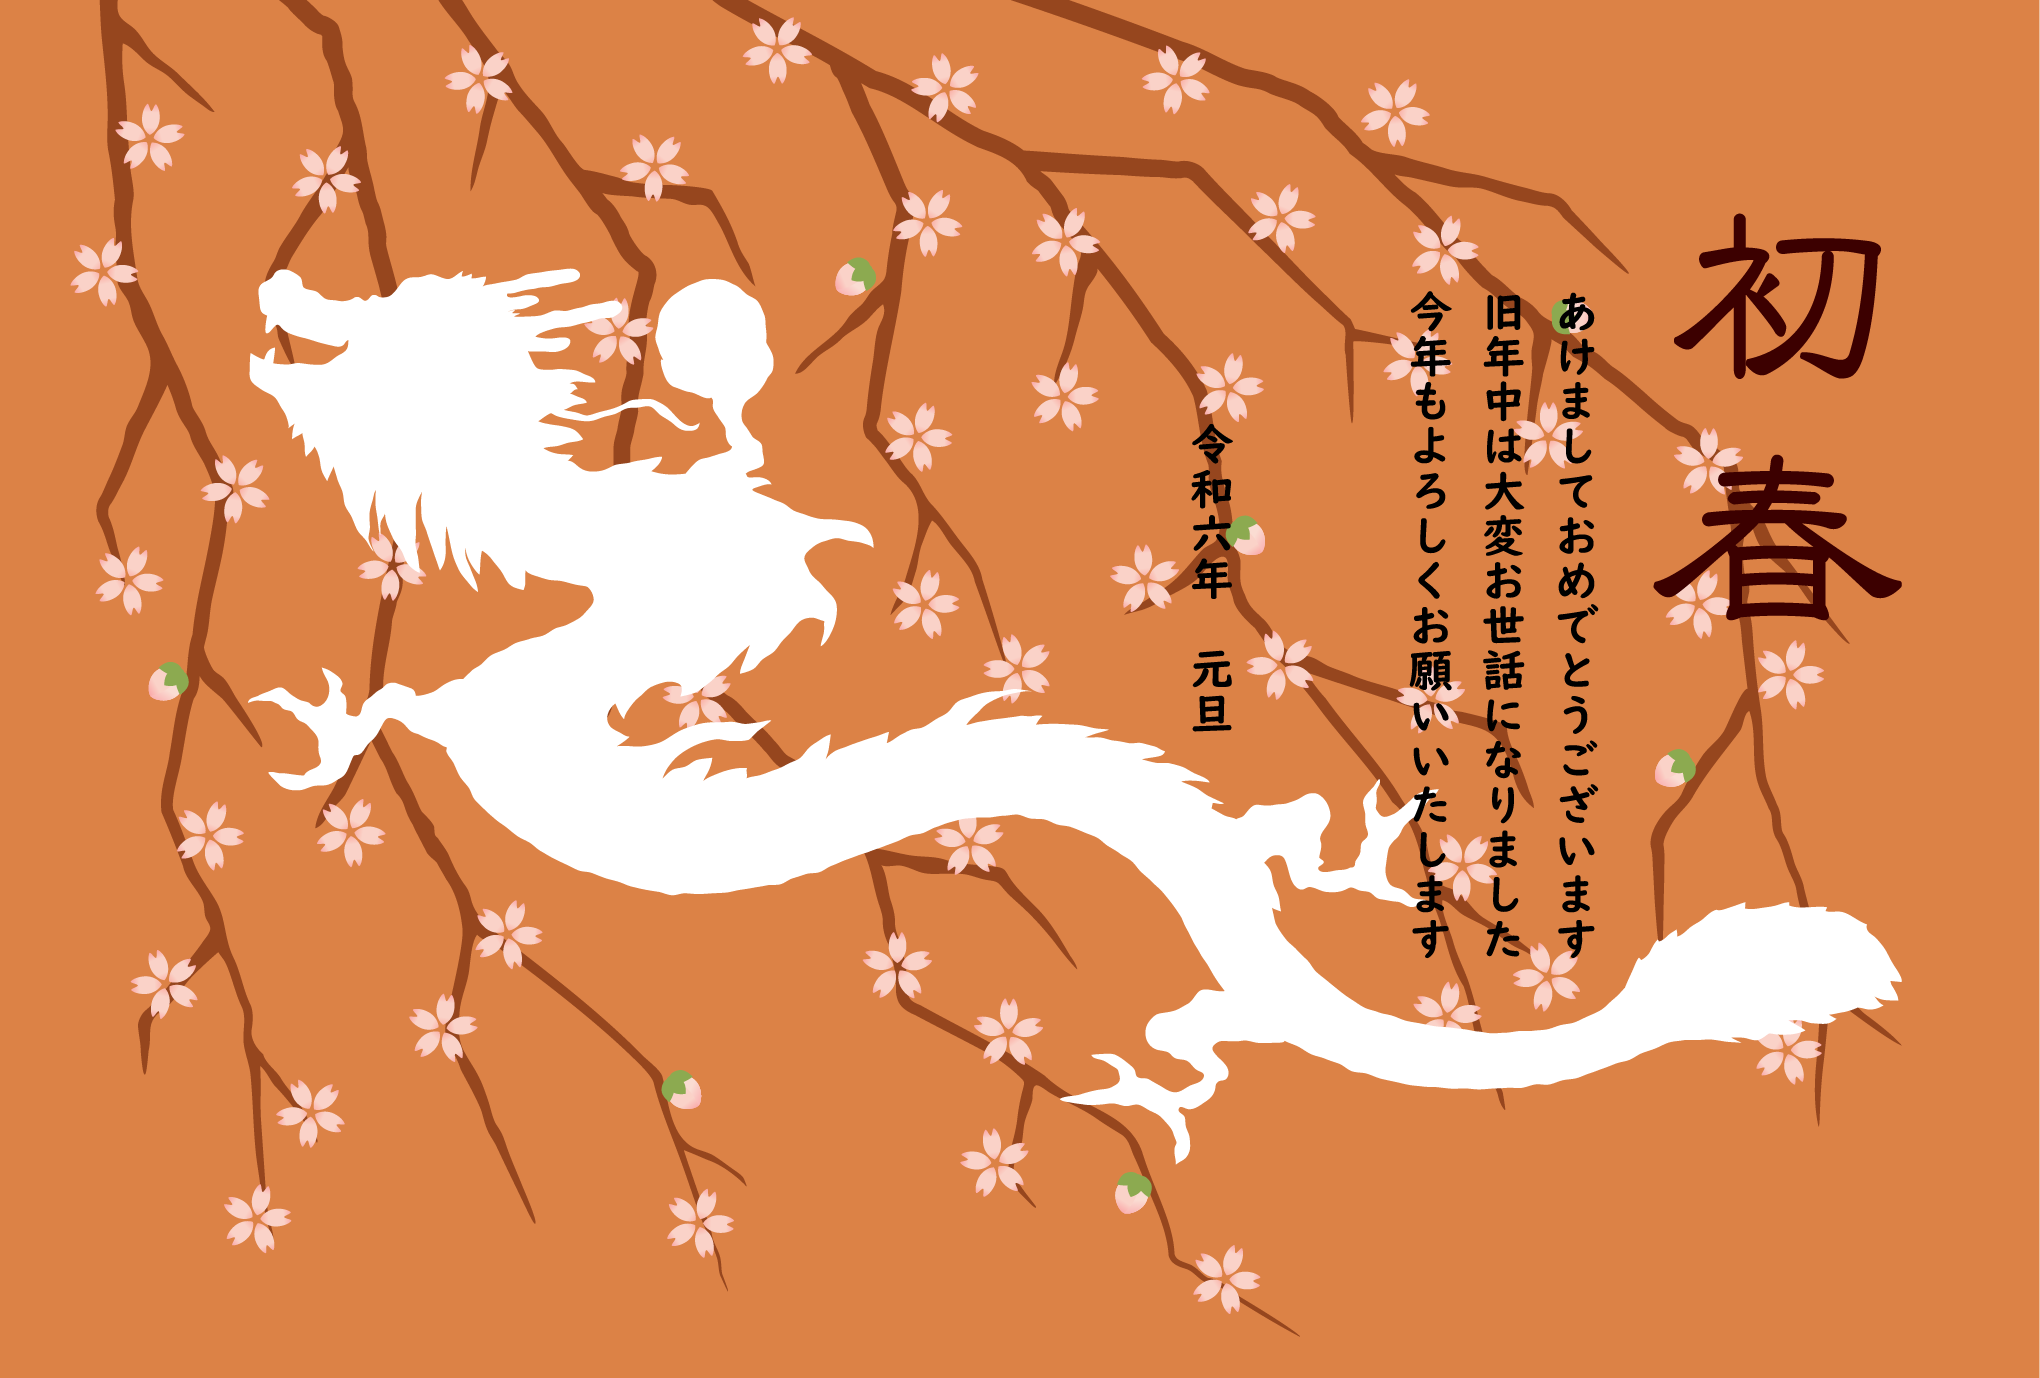 桜とシルエットの龍の和風デザインの年賀状テンプレート